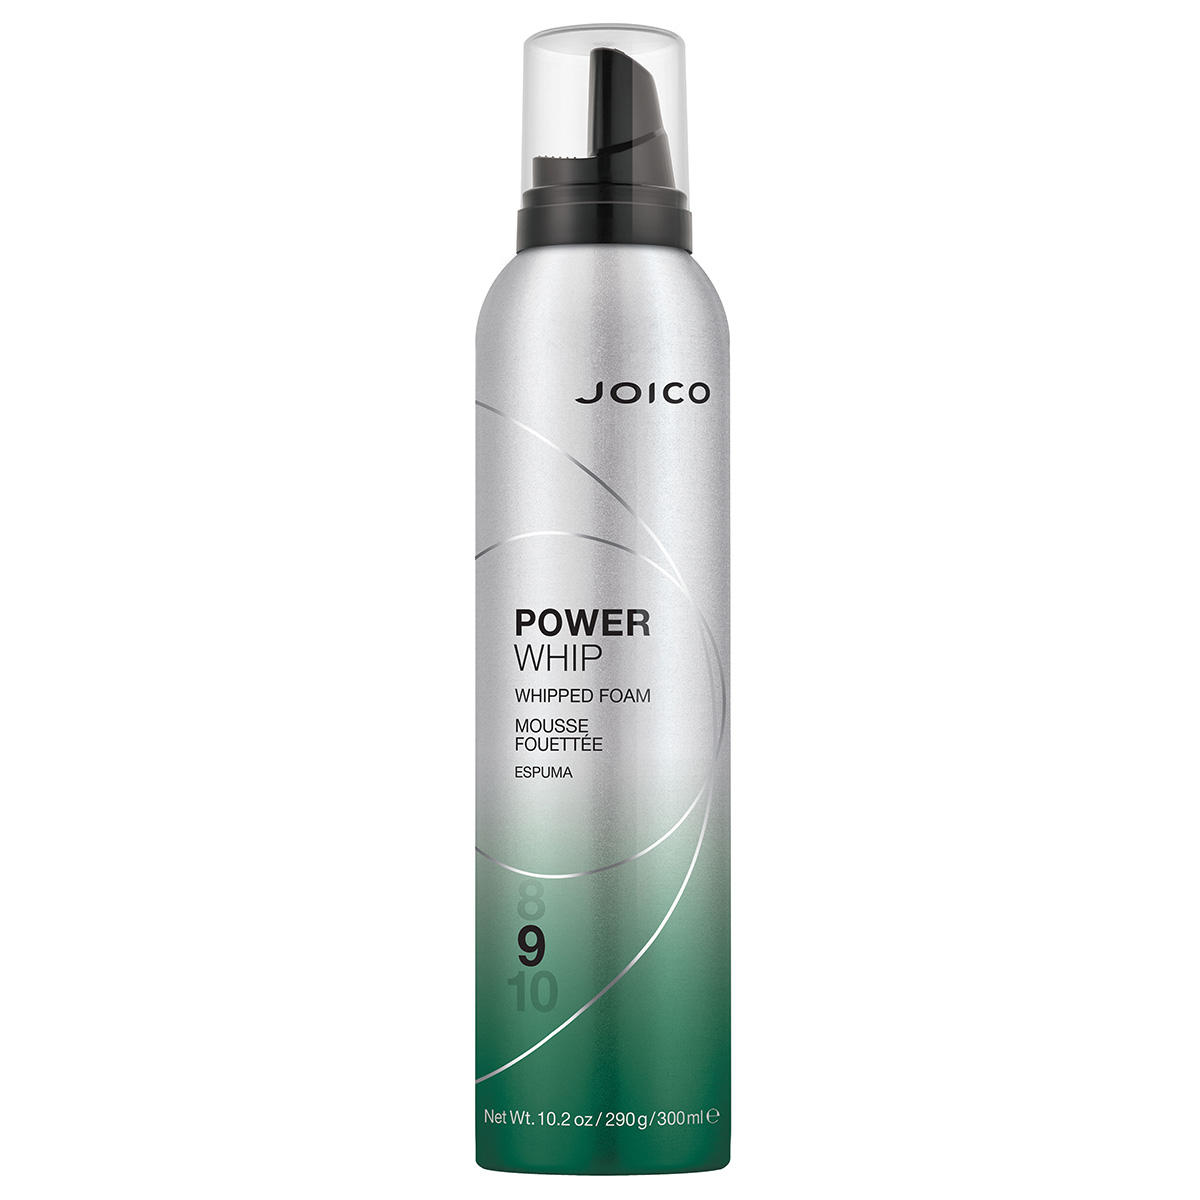 JOICO Power Whip Whipped Foam 300 ml - 1